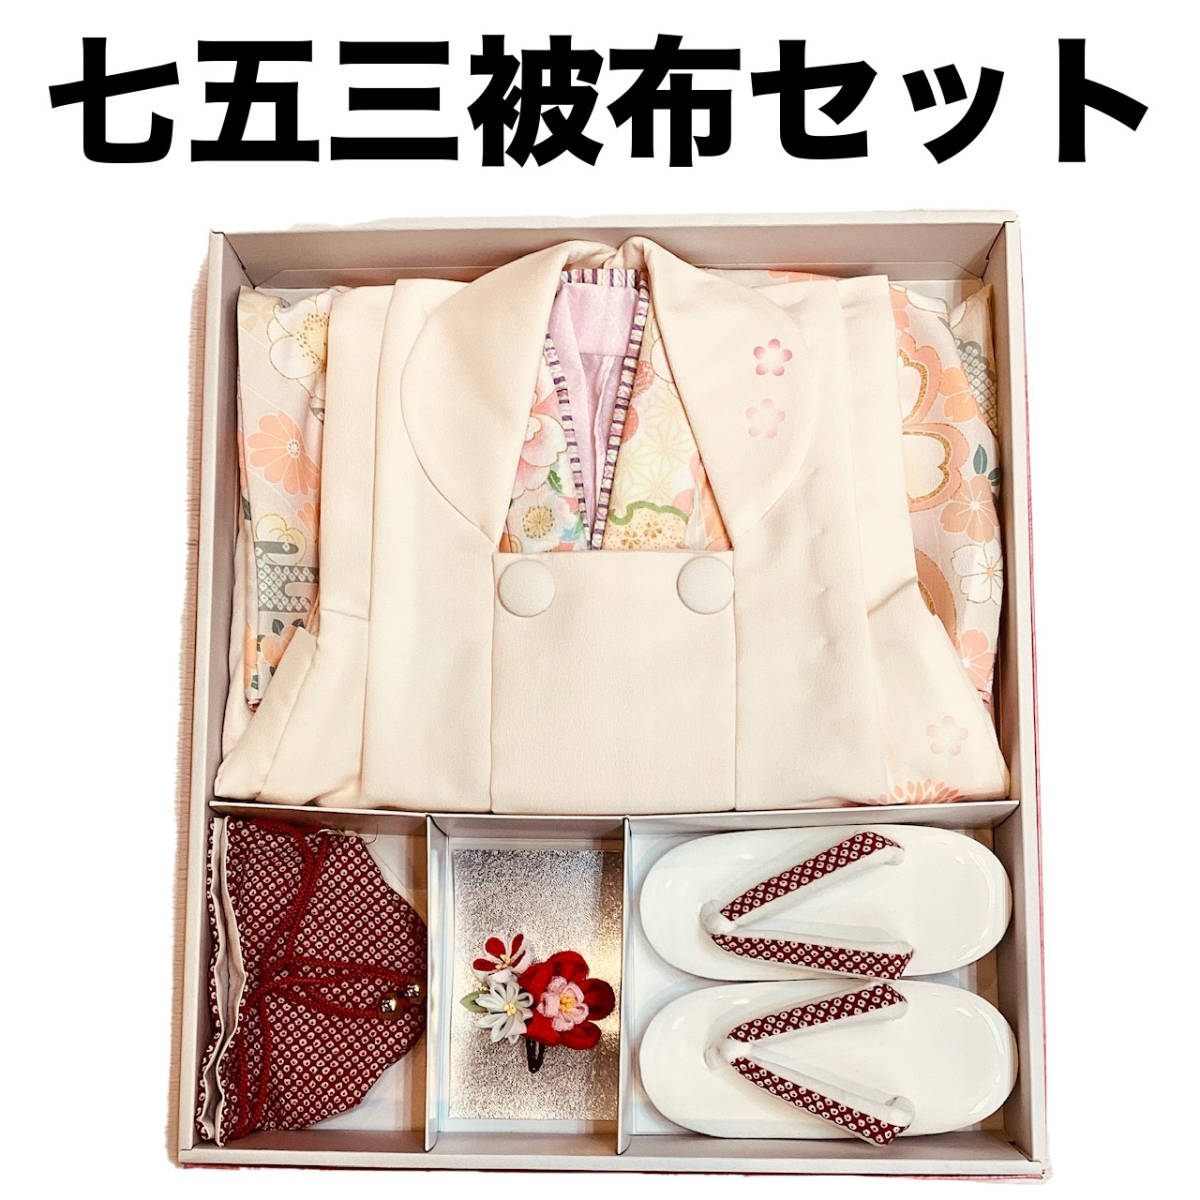  "Семь, пять, три" кимоно mi525 3 лет . ткань * кимоно 6 позиций комплект пастель цвет .. рисунок сделано в Японии новый товар включая доставку 